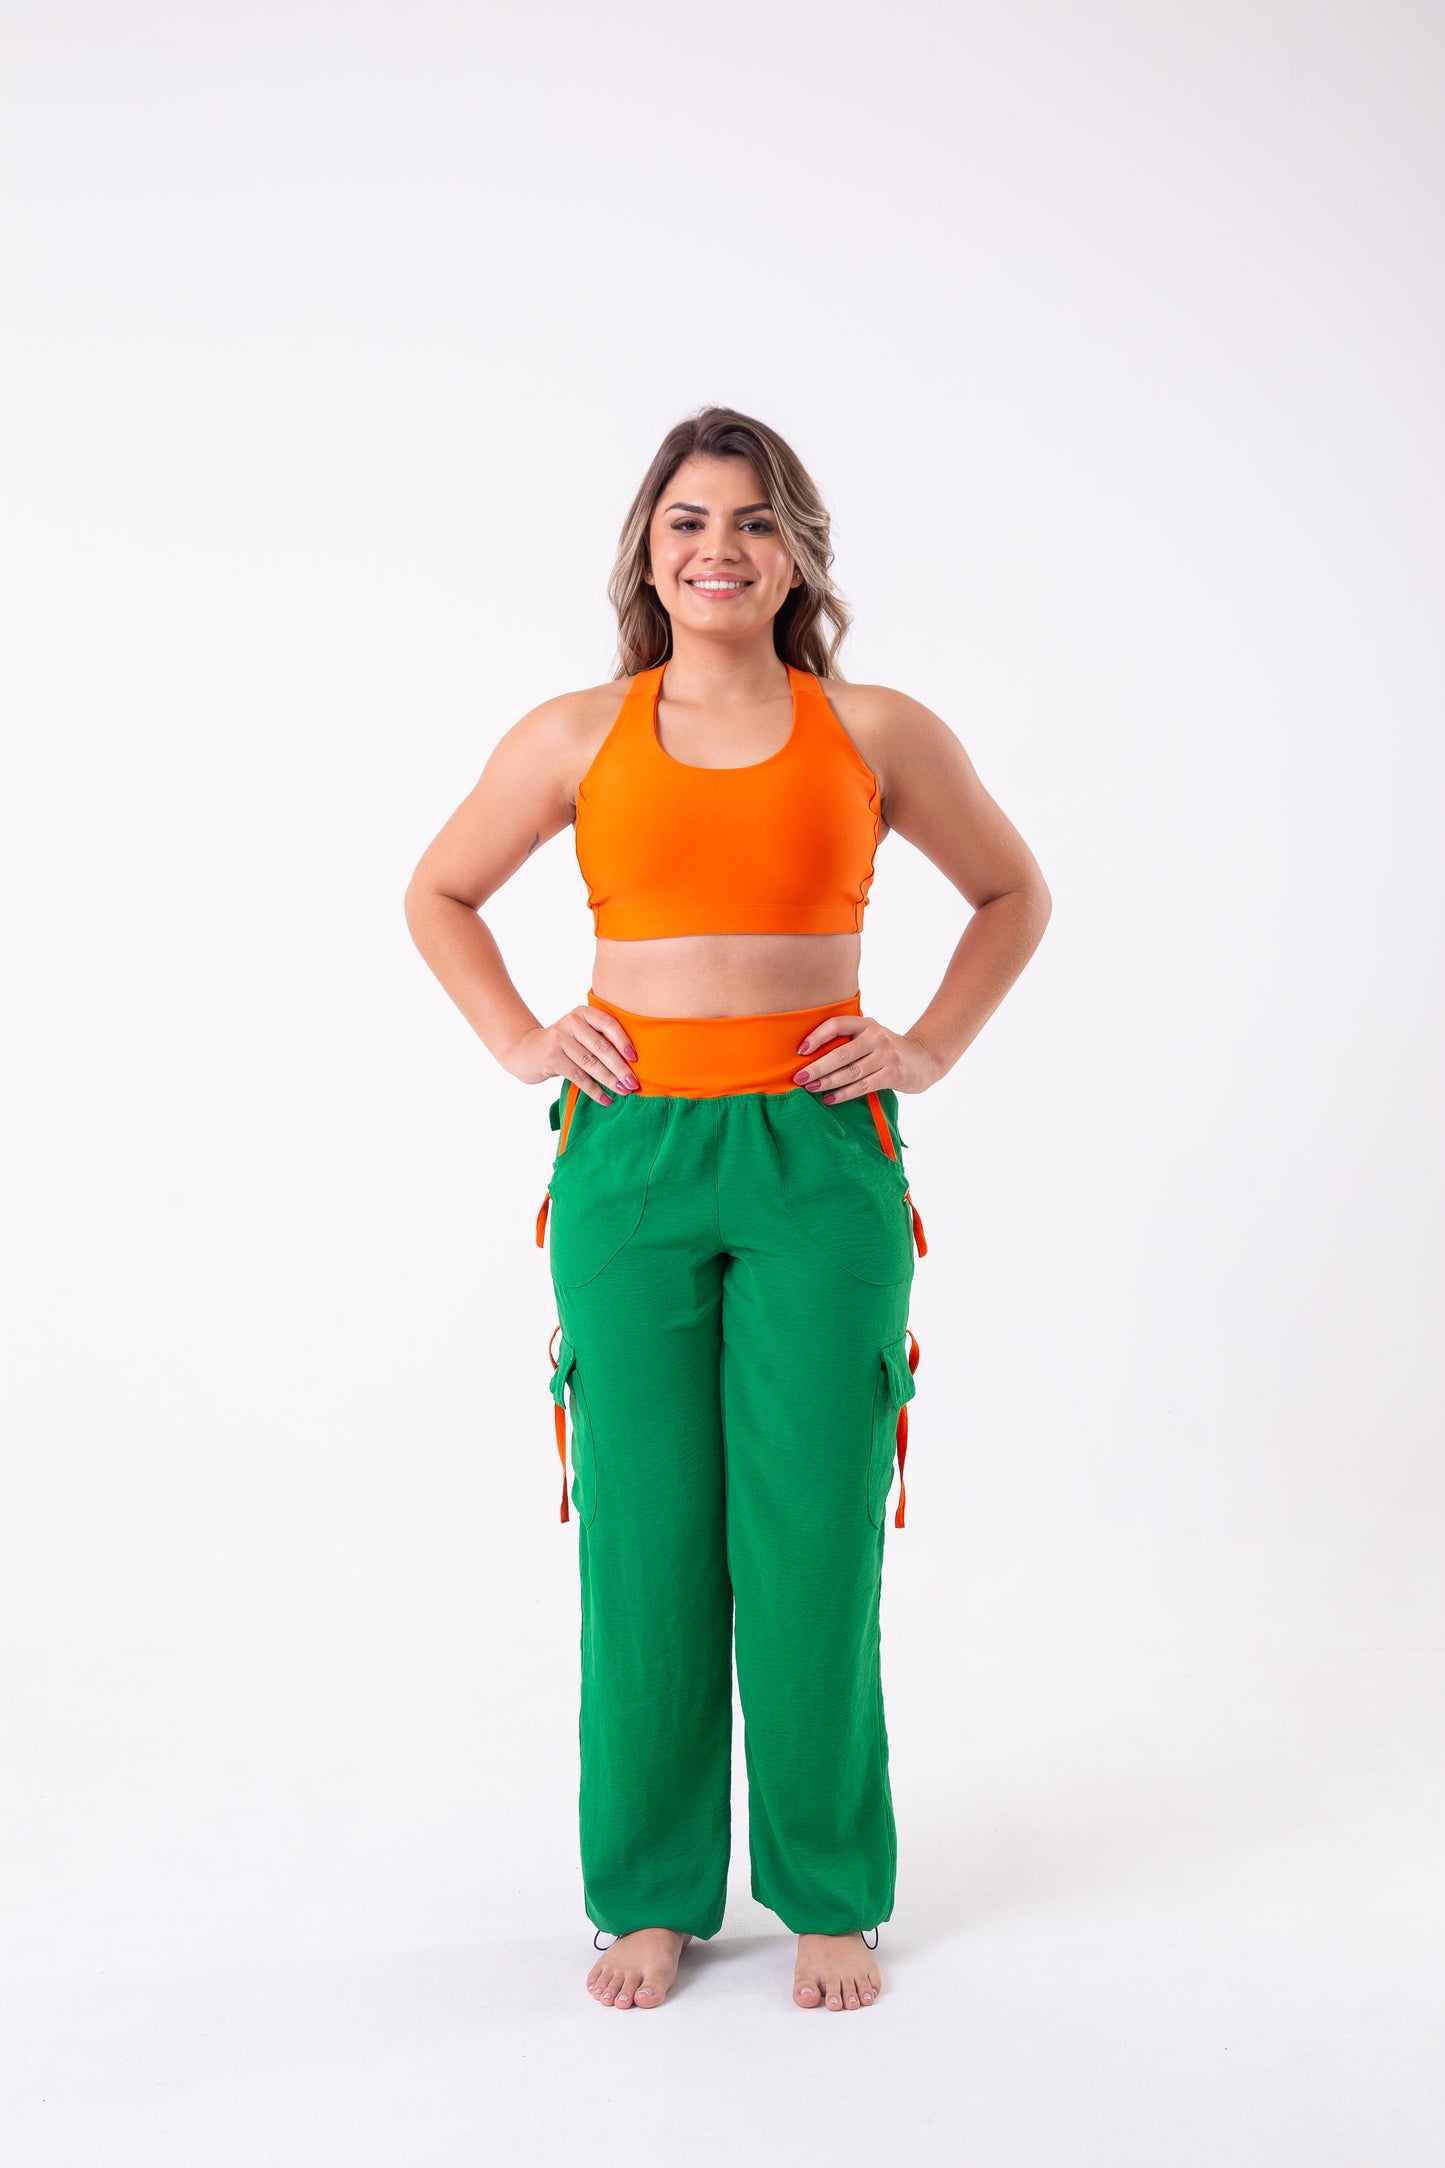 Green & Orange Cargo Pant